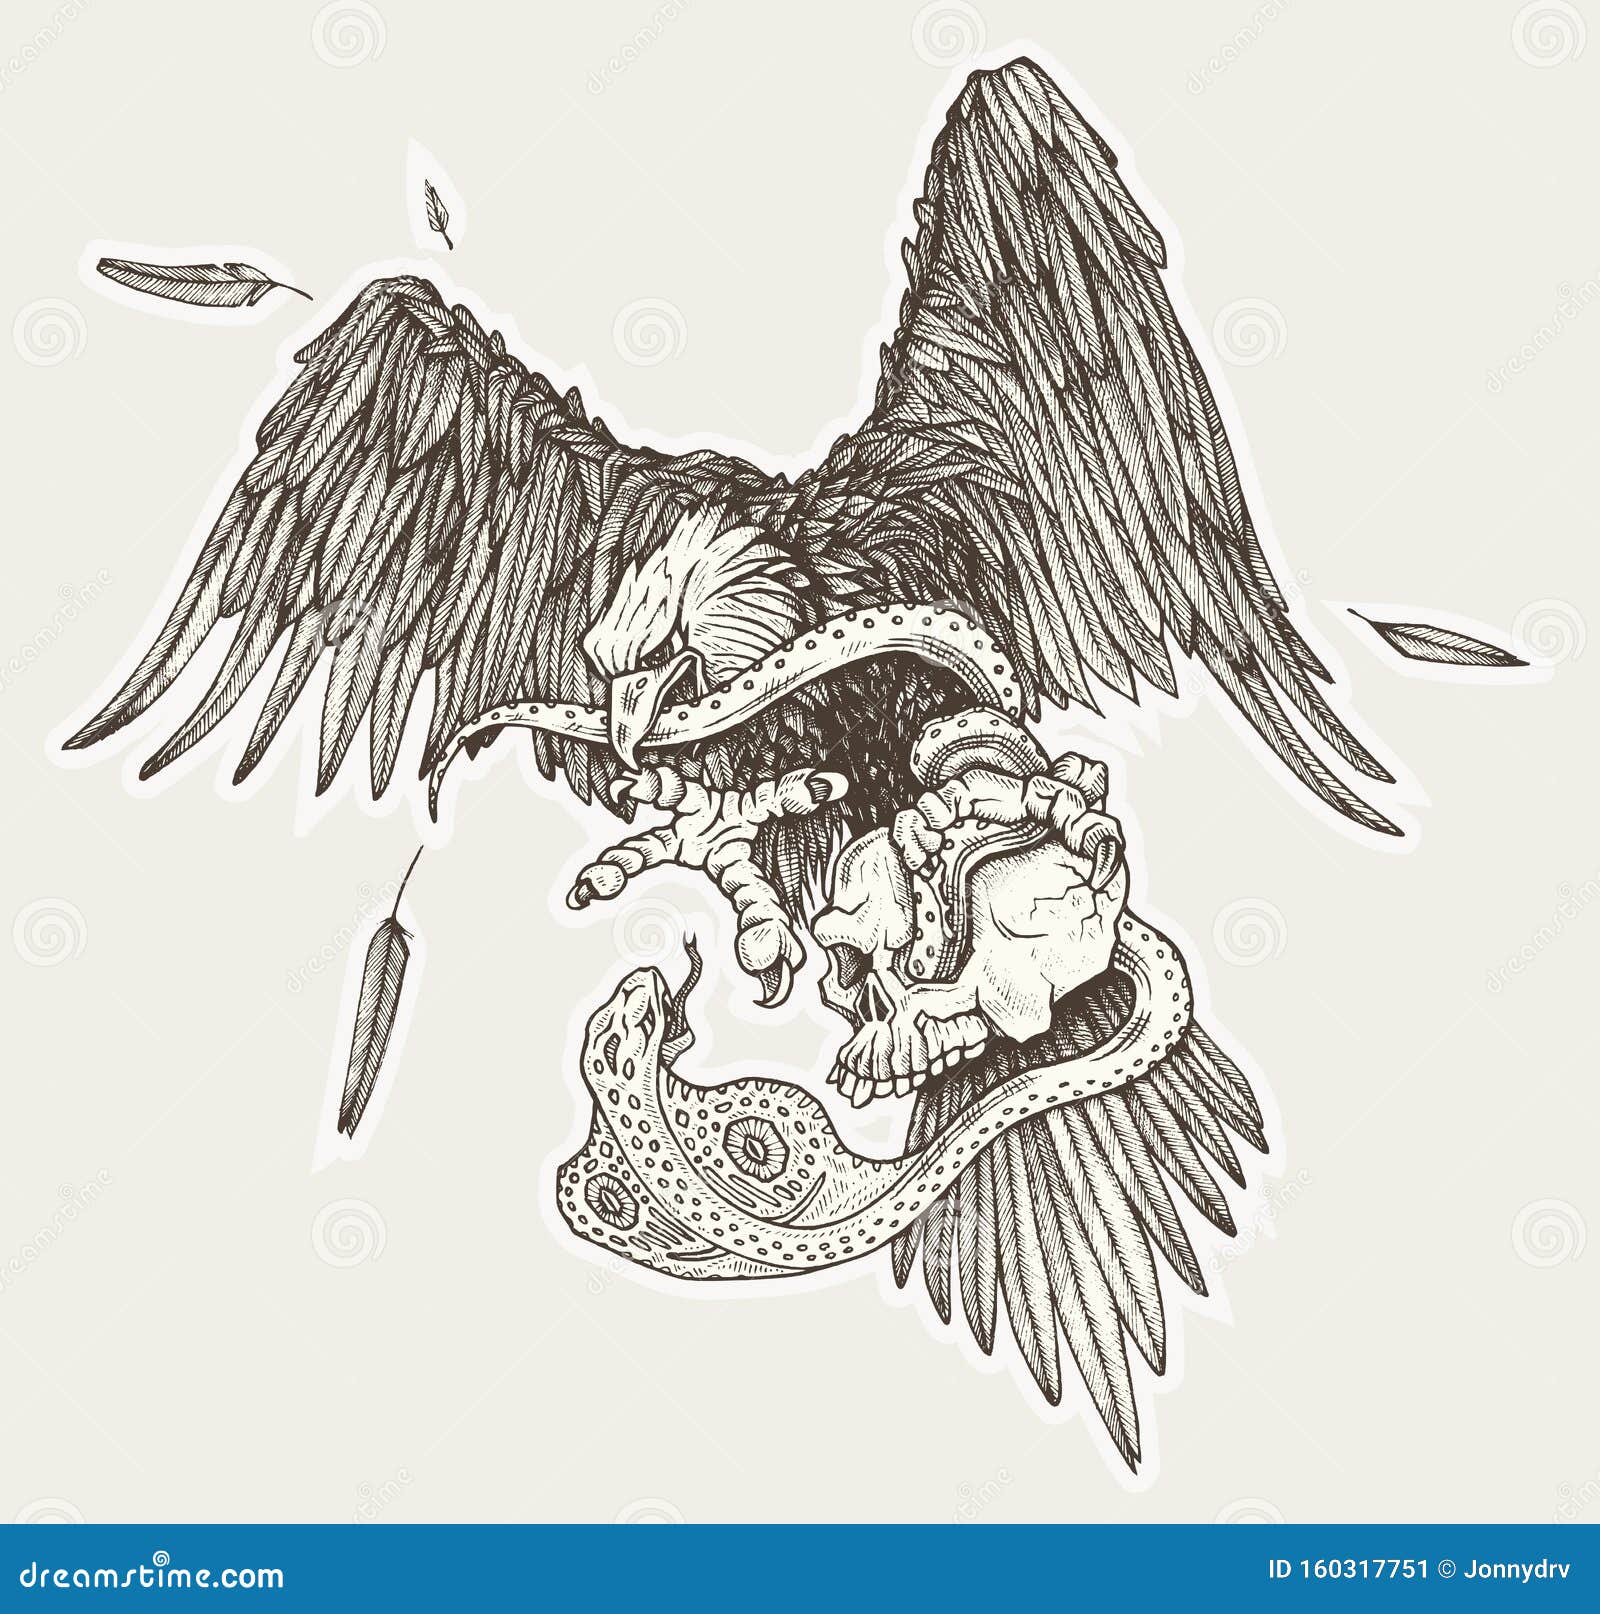 Eagle Vs Snake In Skull In Vector Hand Drawn Illustration